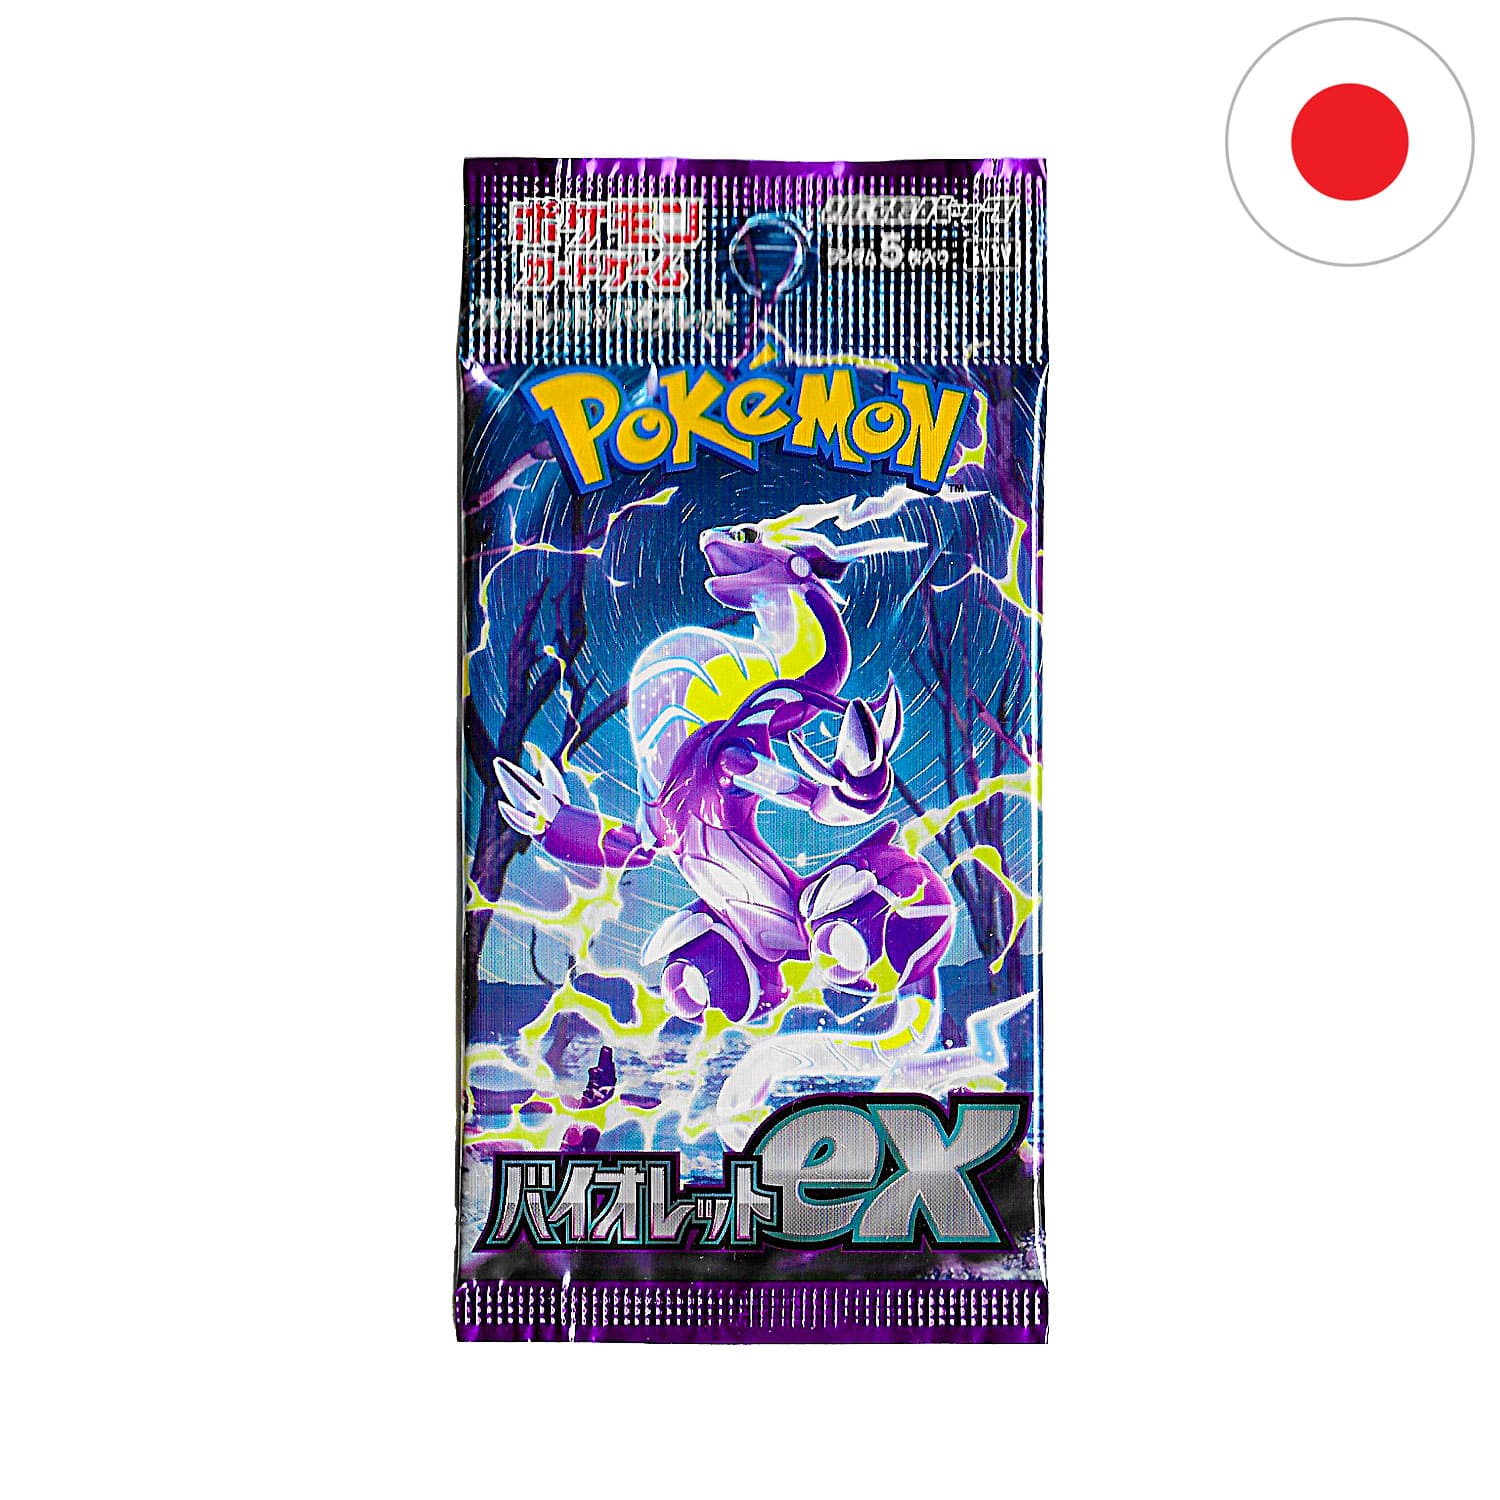 Das Pokemon Boosterpack Violet EX (SV1V) als Scan mit Miraidon auf dem Cover und der Flagge Japans in der Ecke.